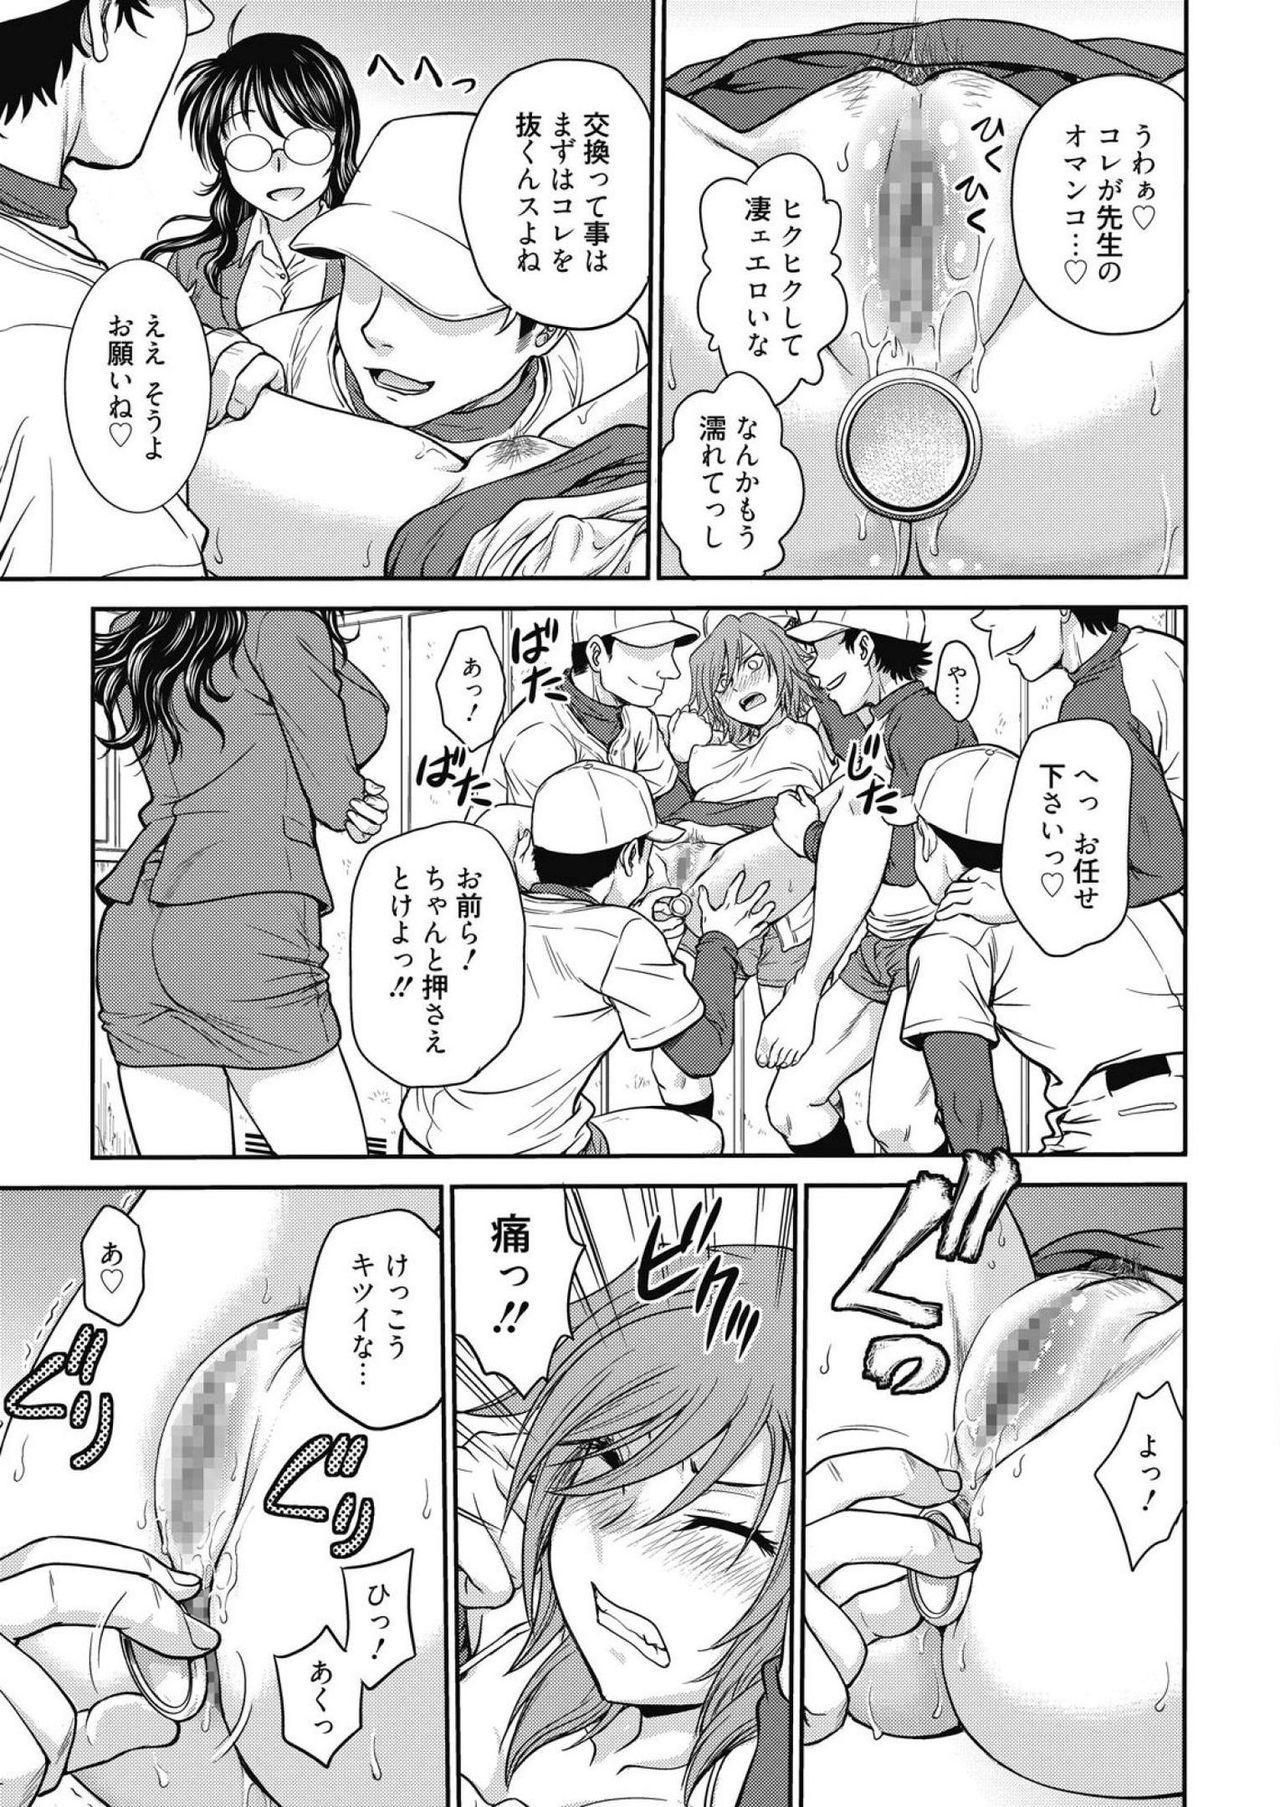 Periscope Web Manga Bangaichi Vol. 14 Tit - Page 7